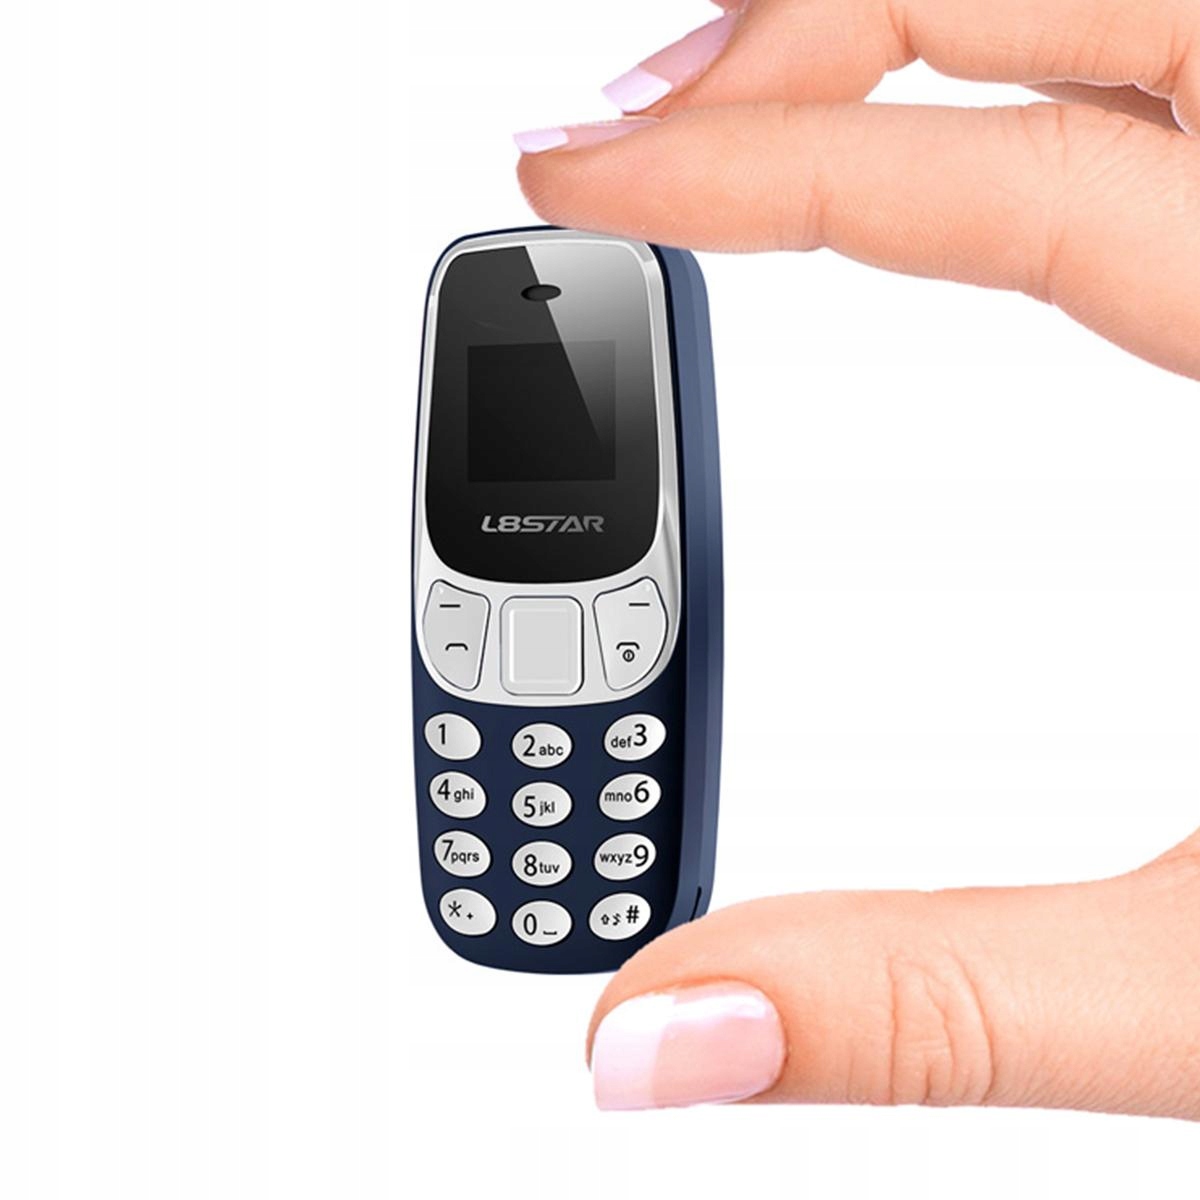 Микро GSM телефон изменение голоса DUAL SIM L8STAR RU